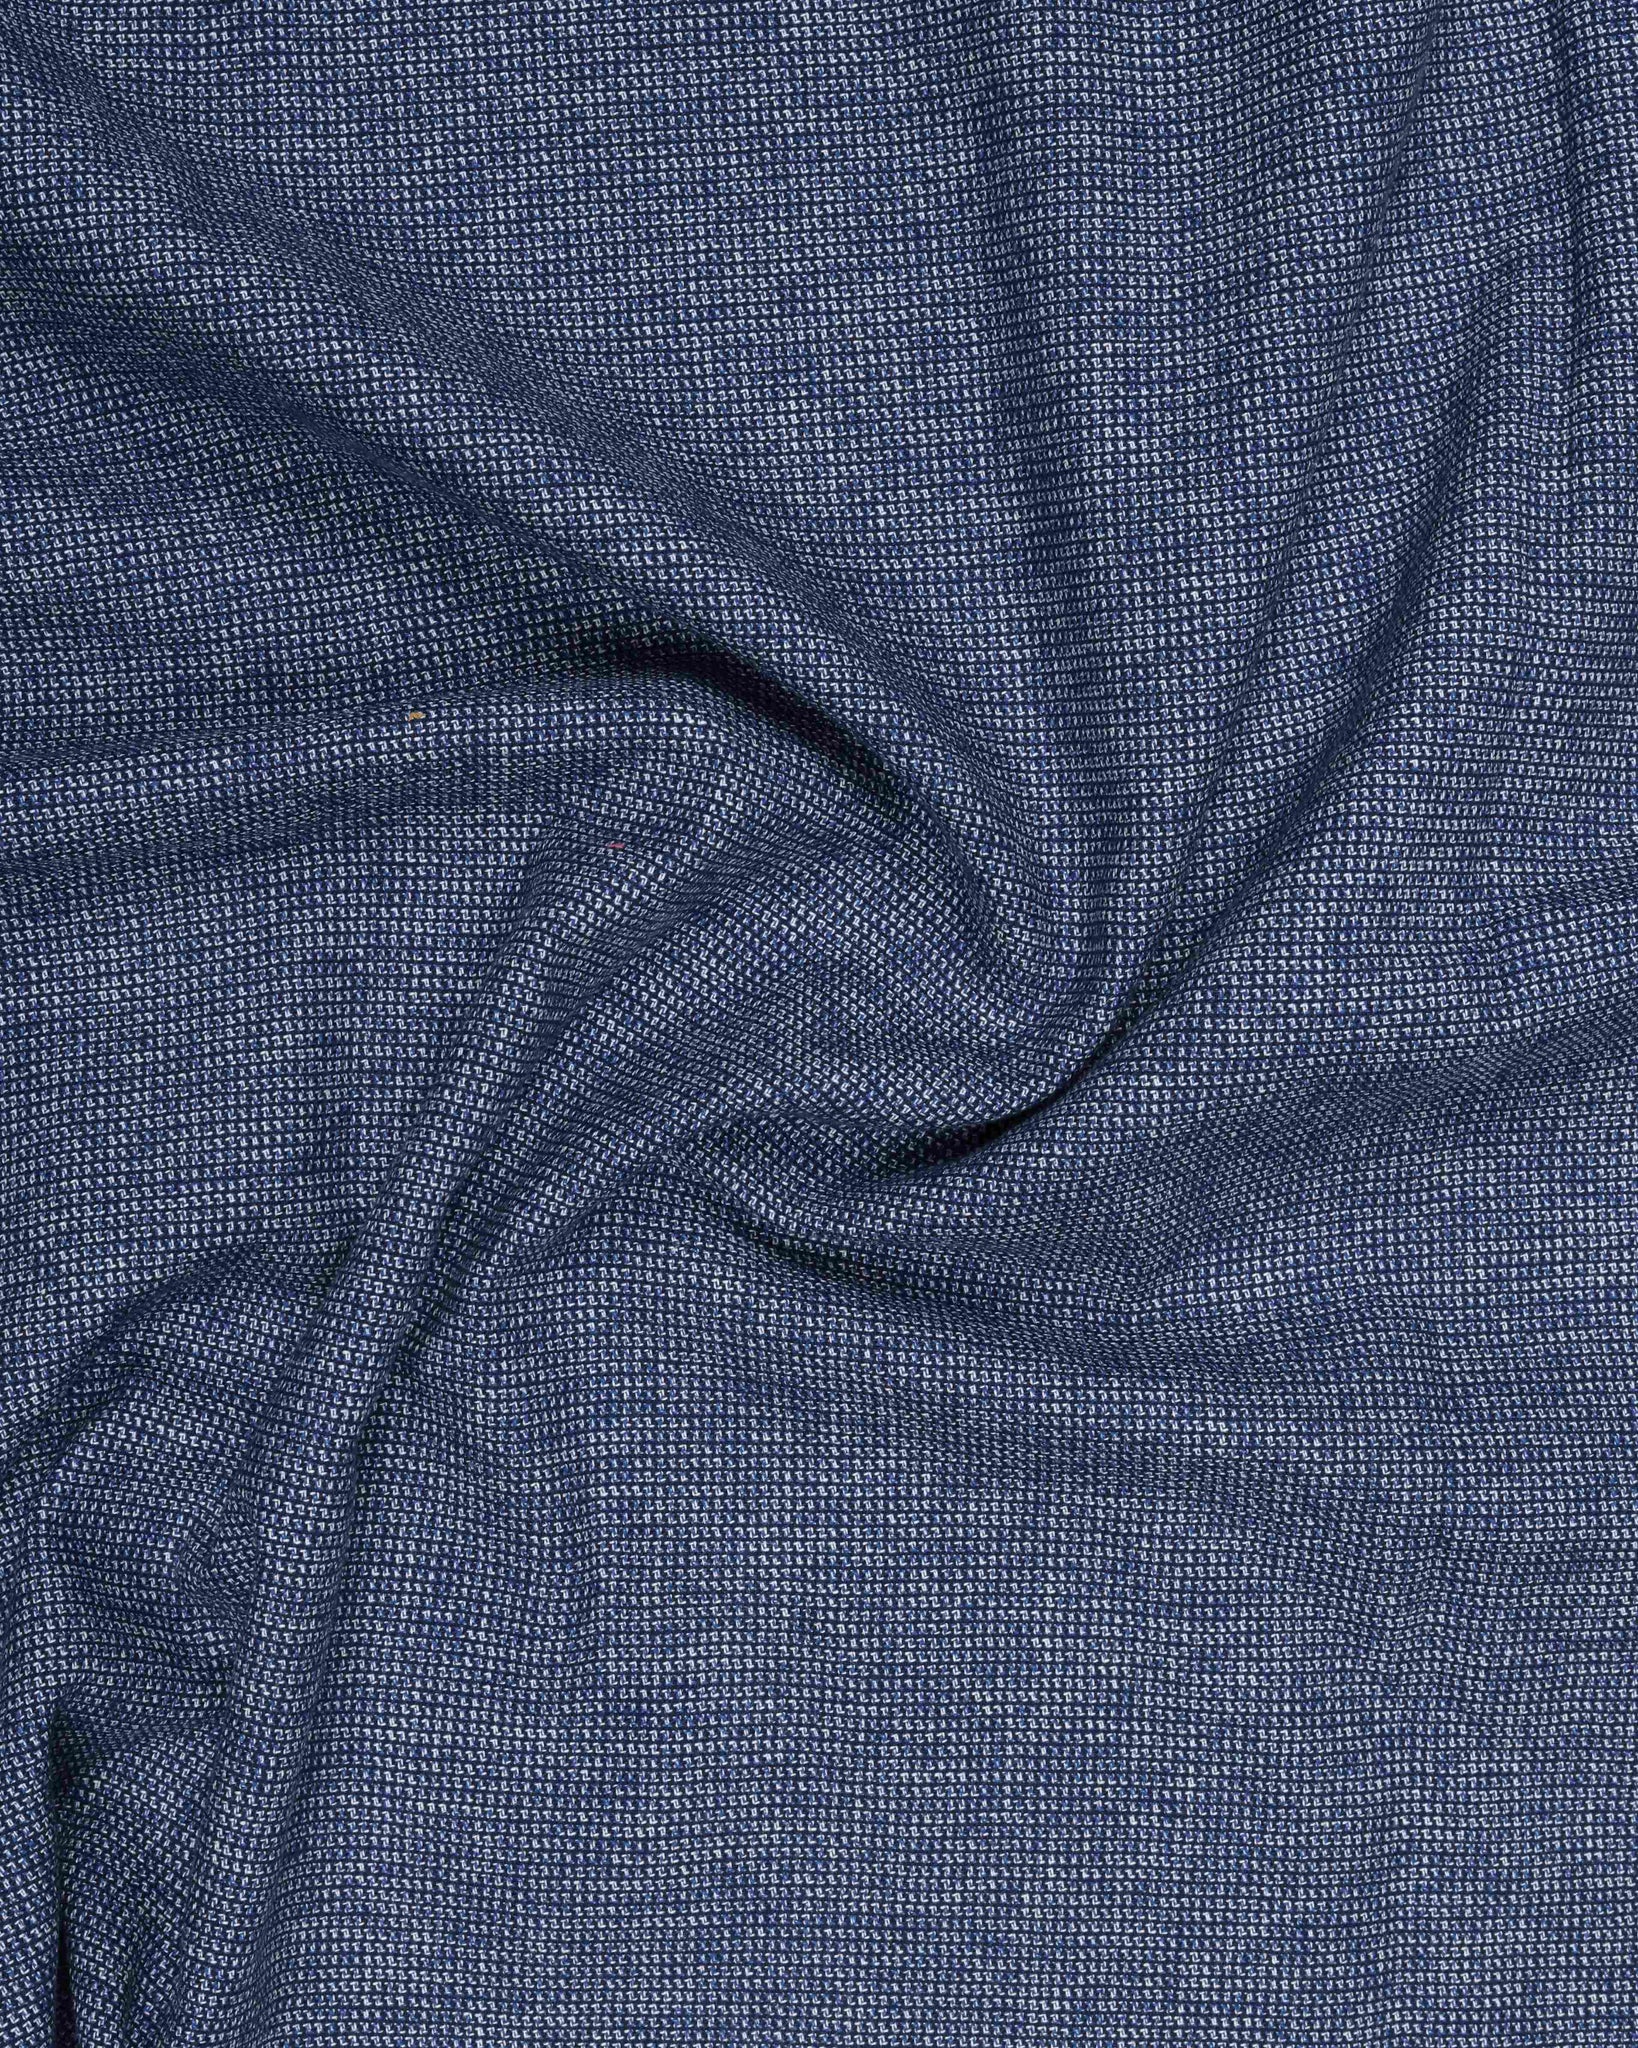 Navy blue plain dobby shirt